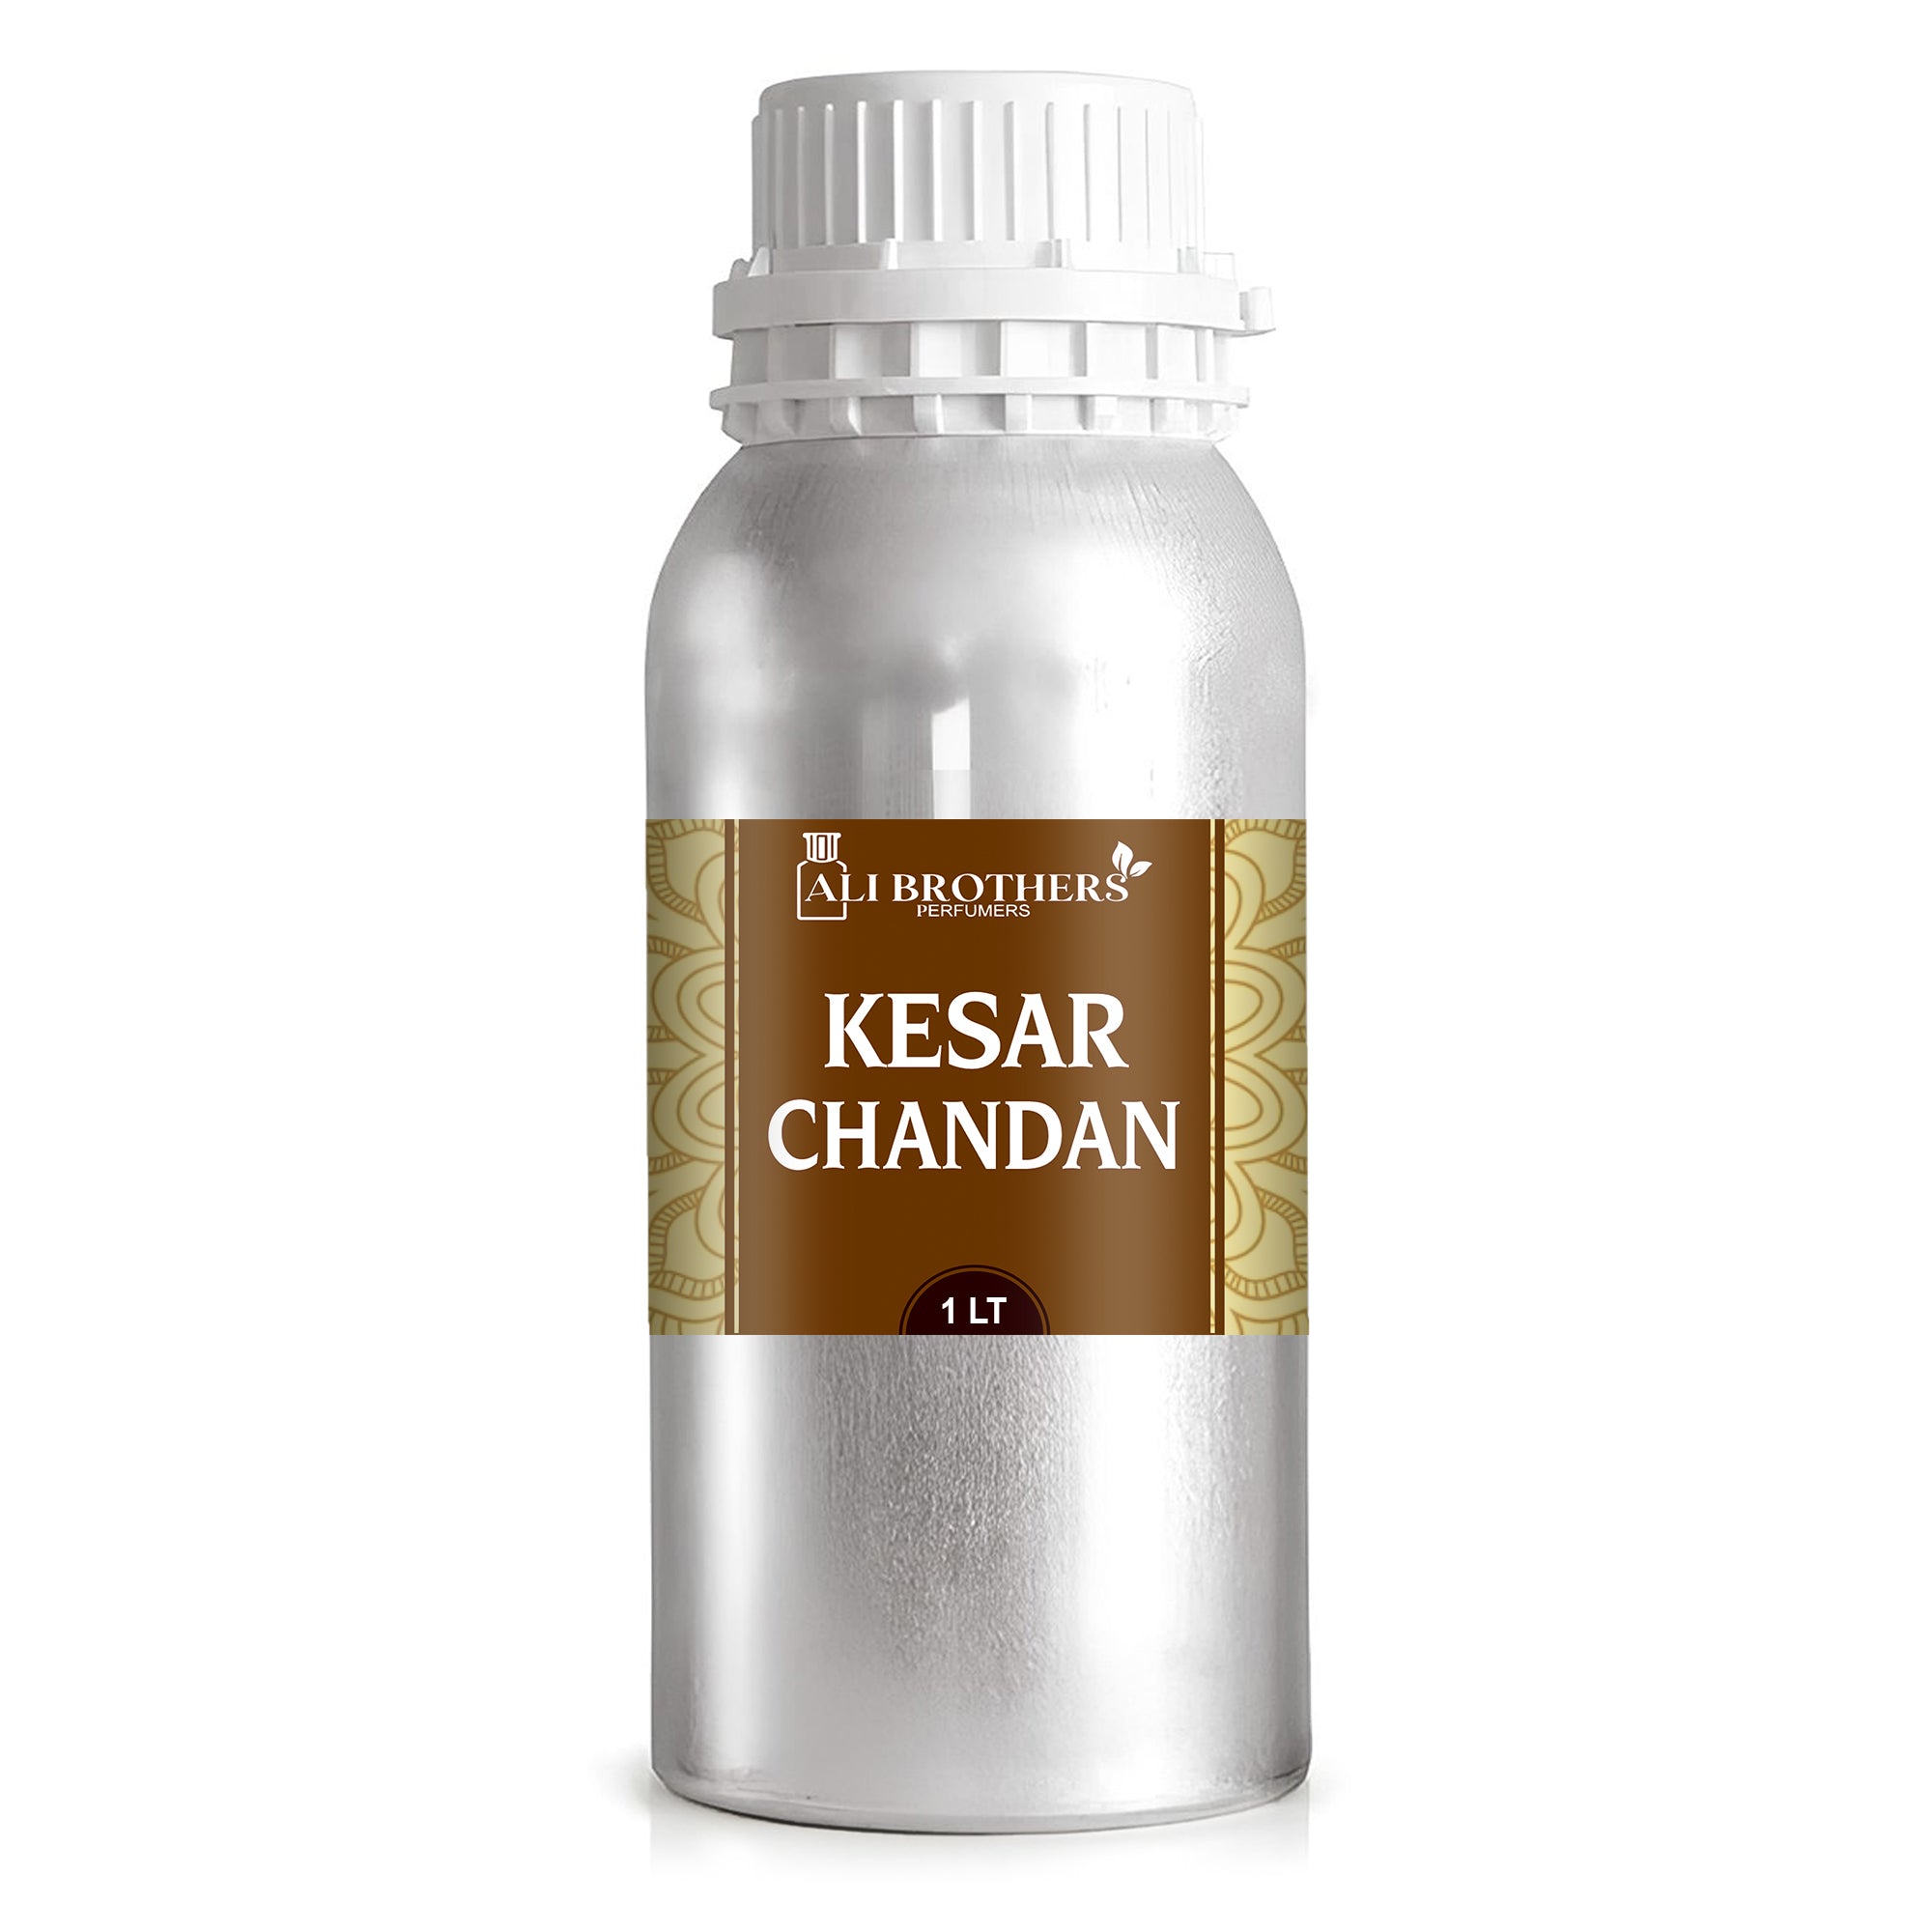 Kesar Chandan